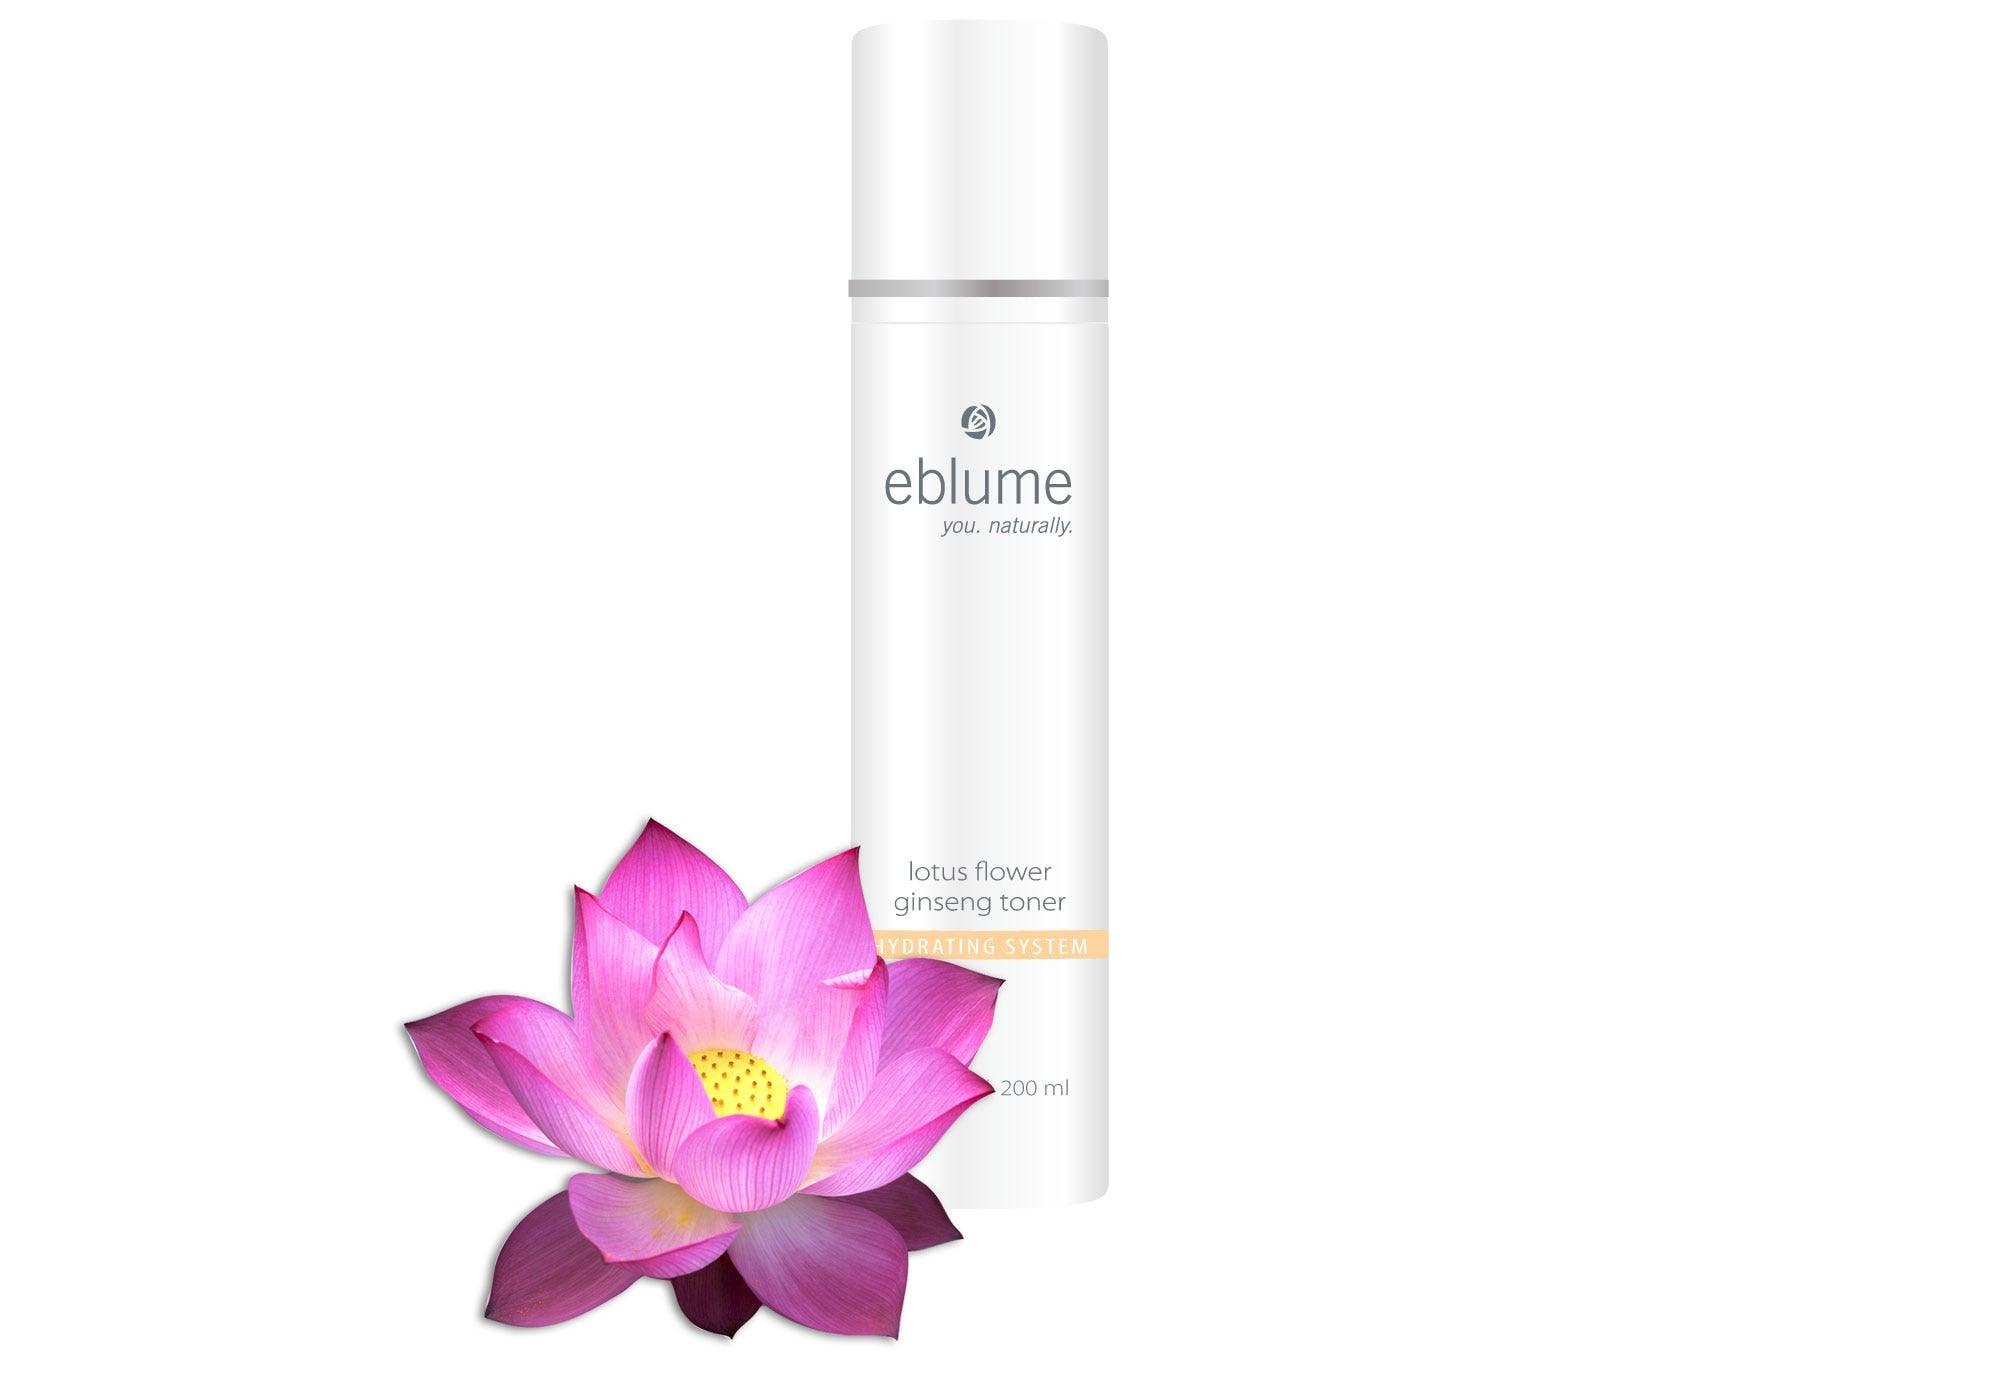 eblume® Lotus Flower Ginseng Skin Toner - 6.8 fl oz view 2 of 2